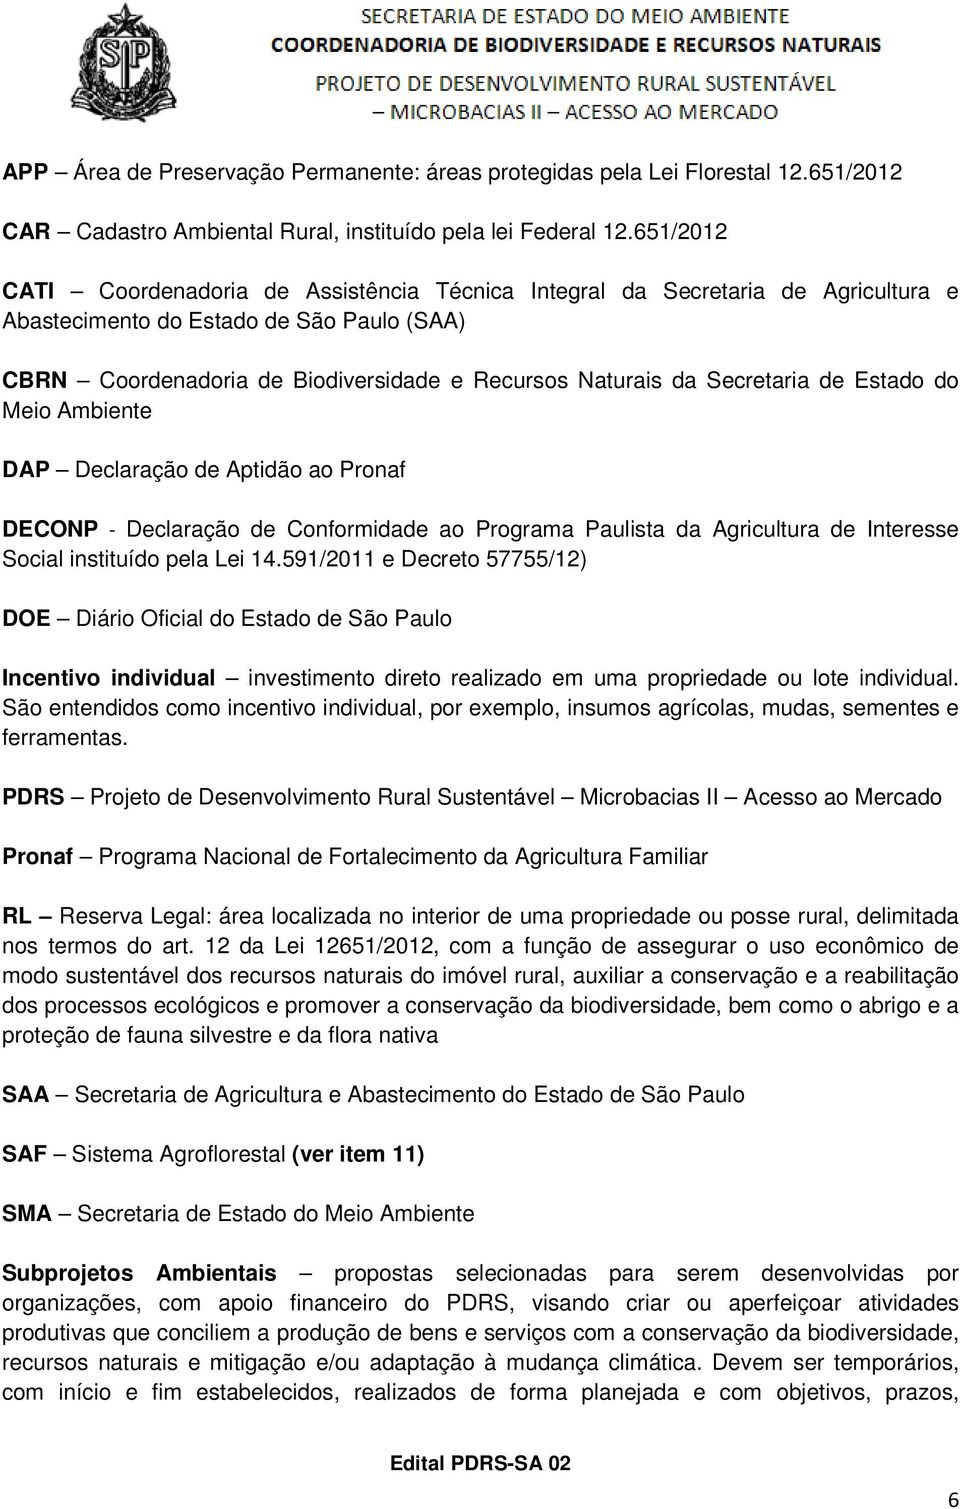 Secretaria de Estado do Meio Ambiente DAP Declaração de Aptidão ao Pronaf DECONP - Declaração de Conformidade ao Programa Paulista da Agricultura de Interesse Social instituído pela Lei 14.